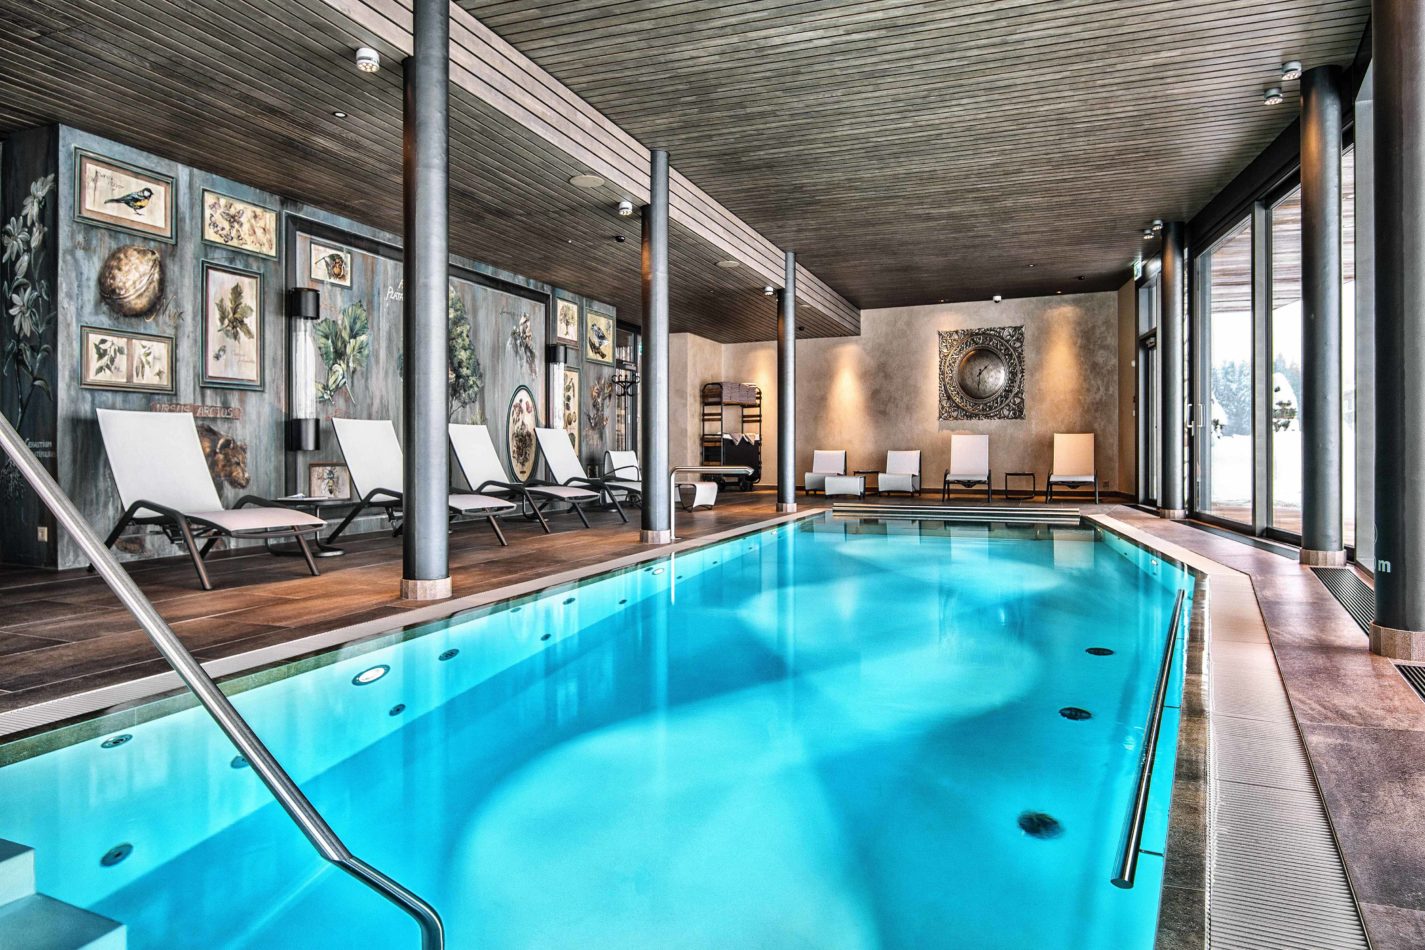 Spa pool at Valsana Hotel, Switzerland | Mr & Mrs Smith